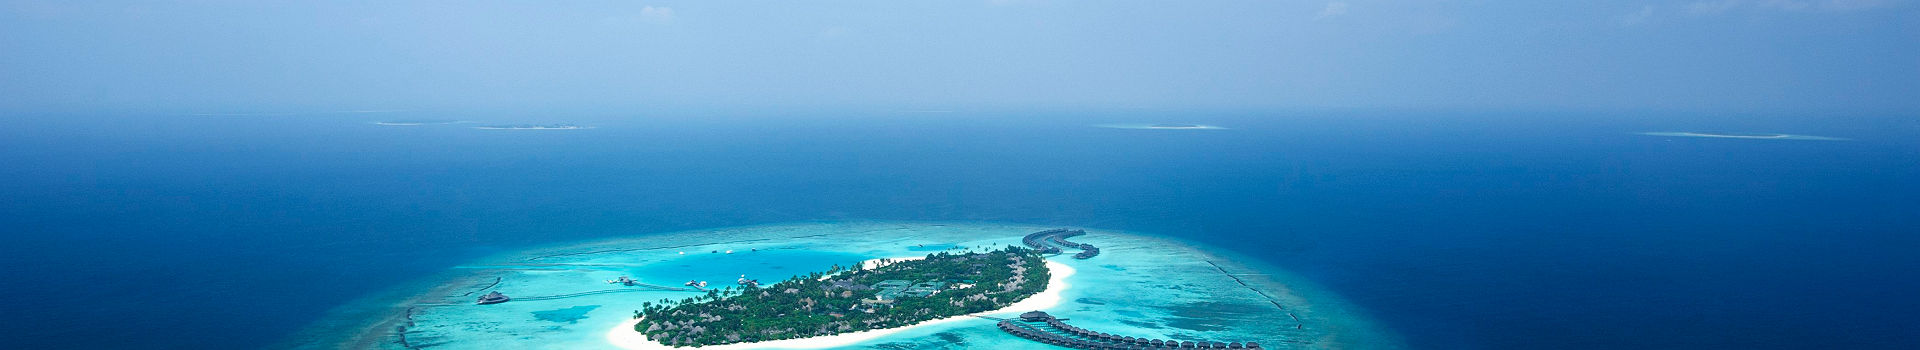 Hôtel Sun Siyam Iru Fushi - Vue de l'île Maldives